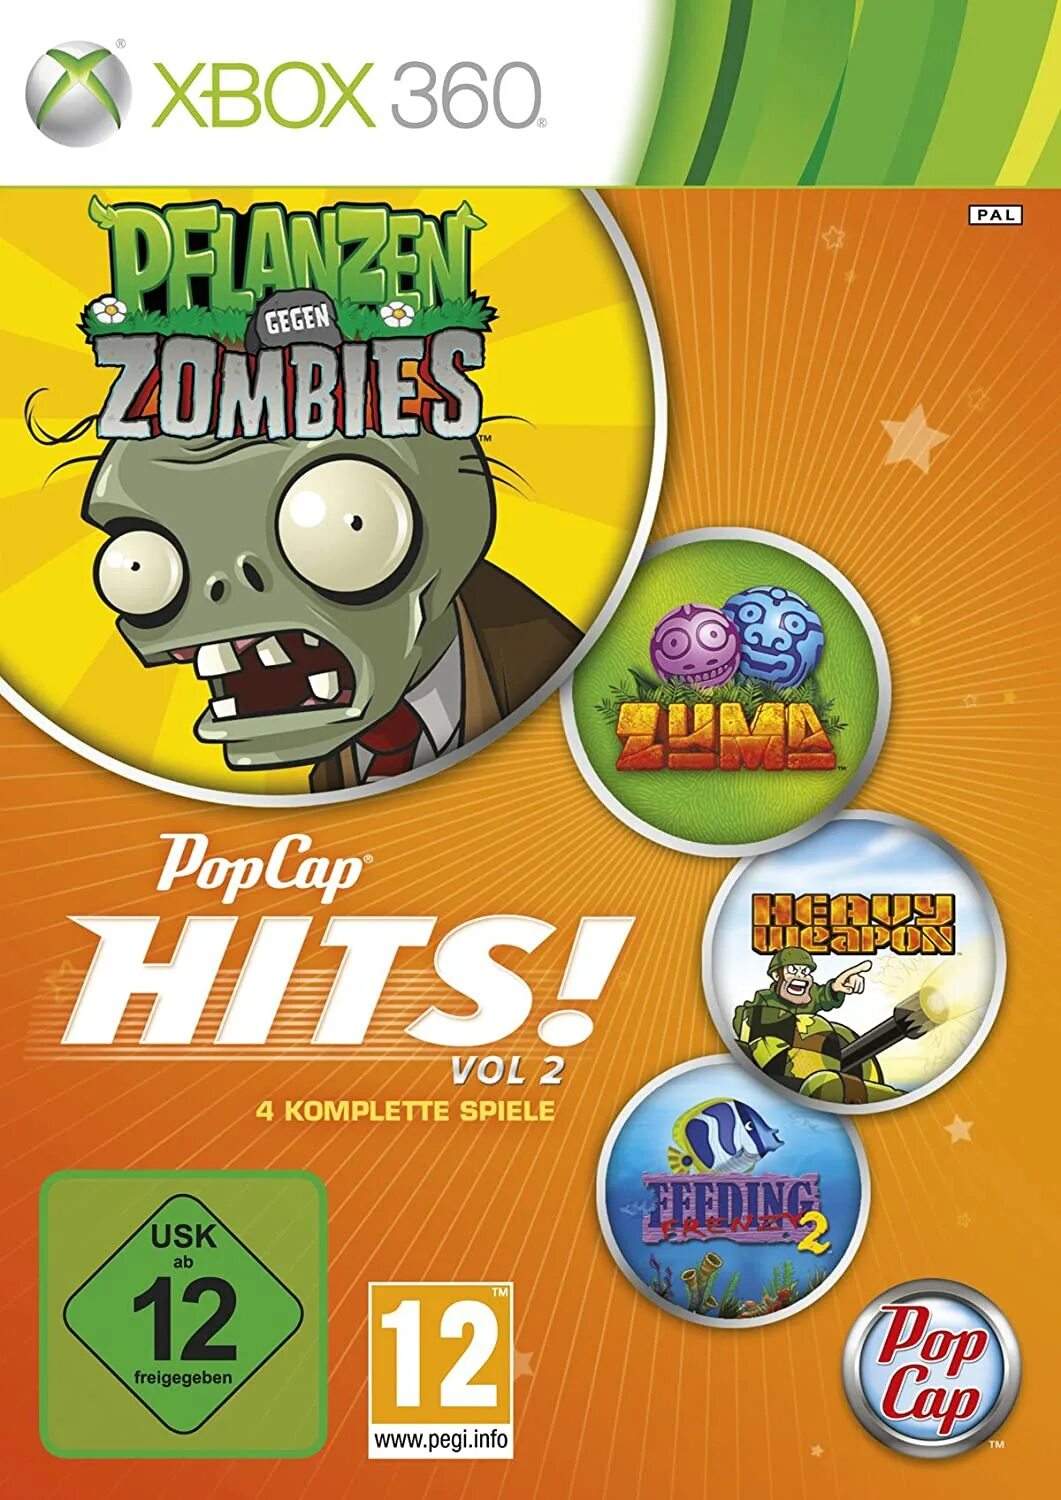 Popcap игры список. POPCAP диск. Растения против зомби на Xbox 360. Диск для растение против зомби хвох 360. POPCAP games.